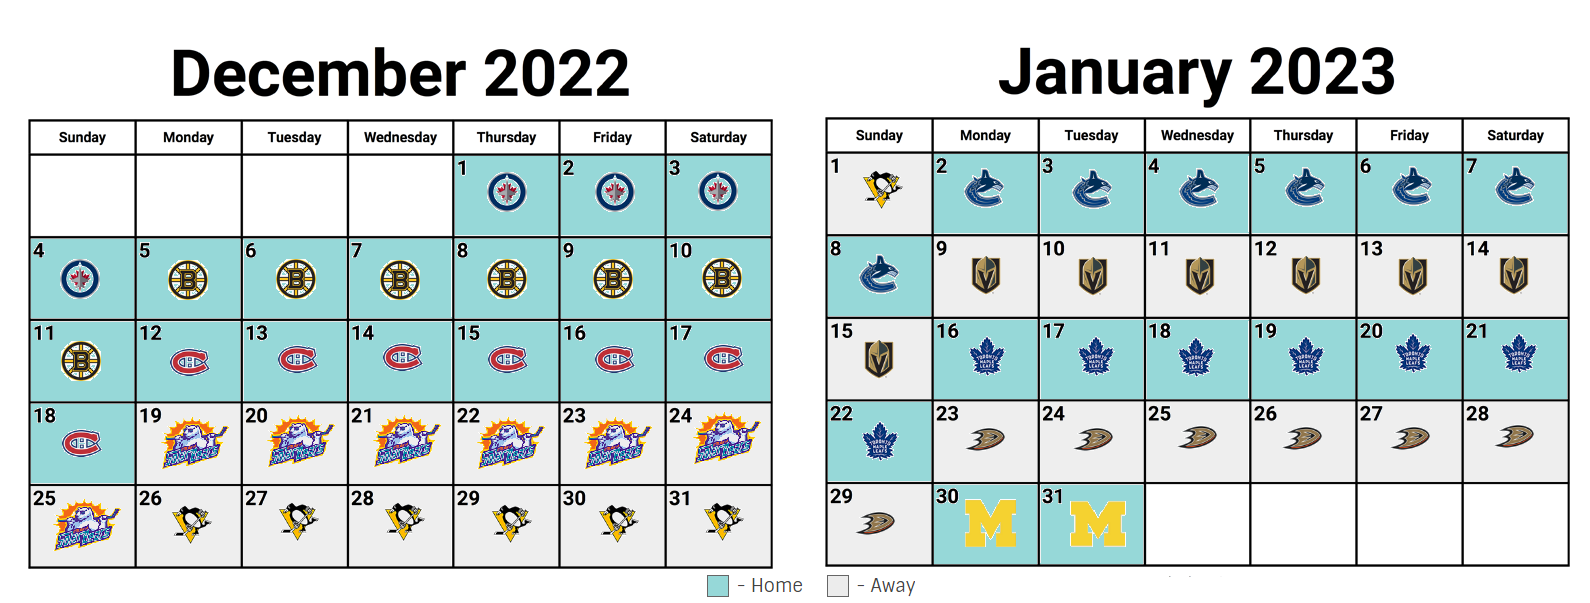 Dec-Jan sched 2022.png